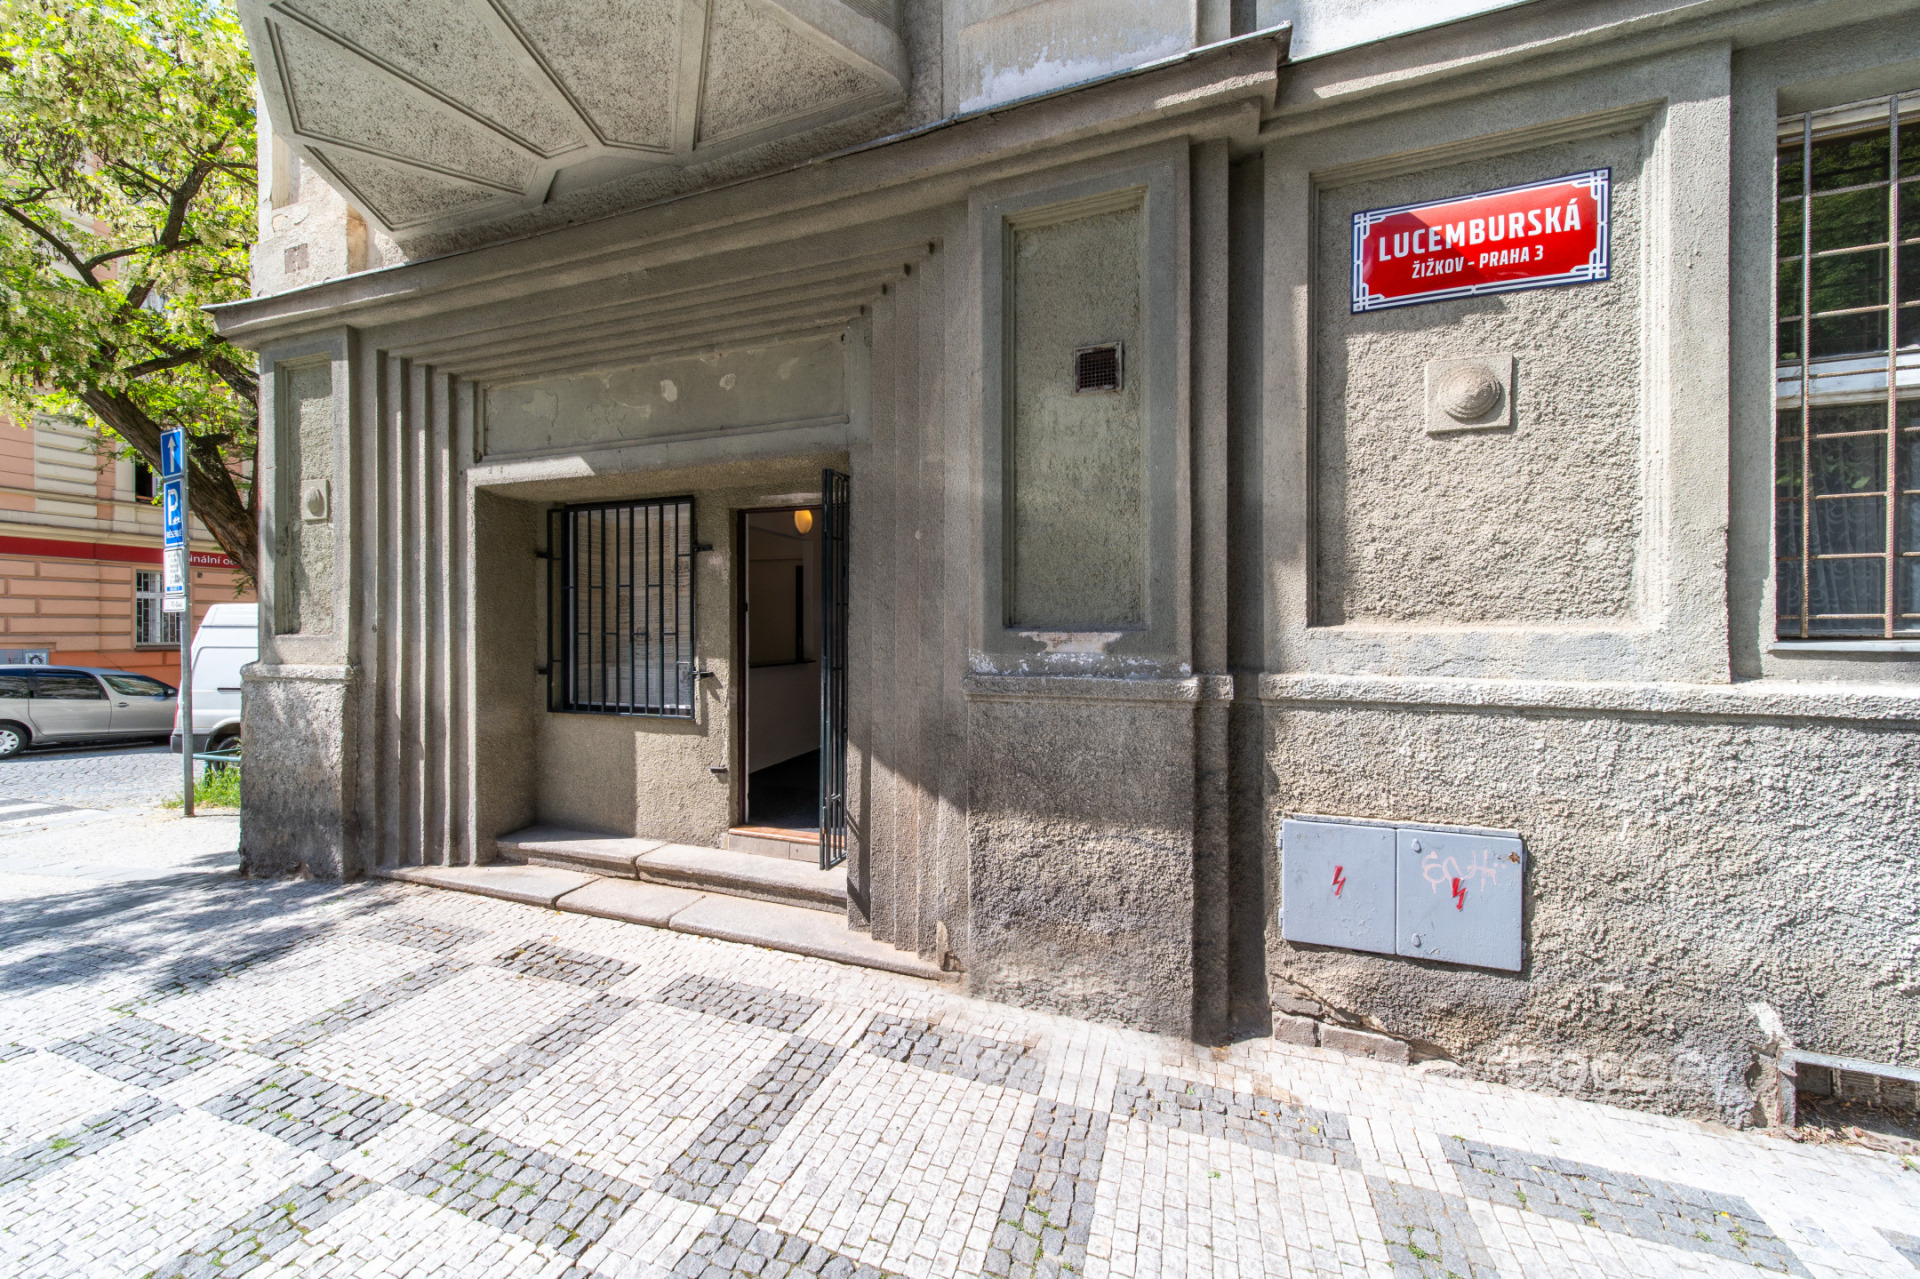 Prodej komerčního prostoru 53,2 m2 (vchod z ulice + výloha) v ulici Lucemburská